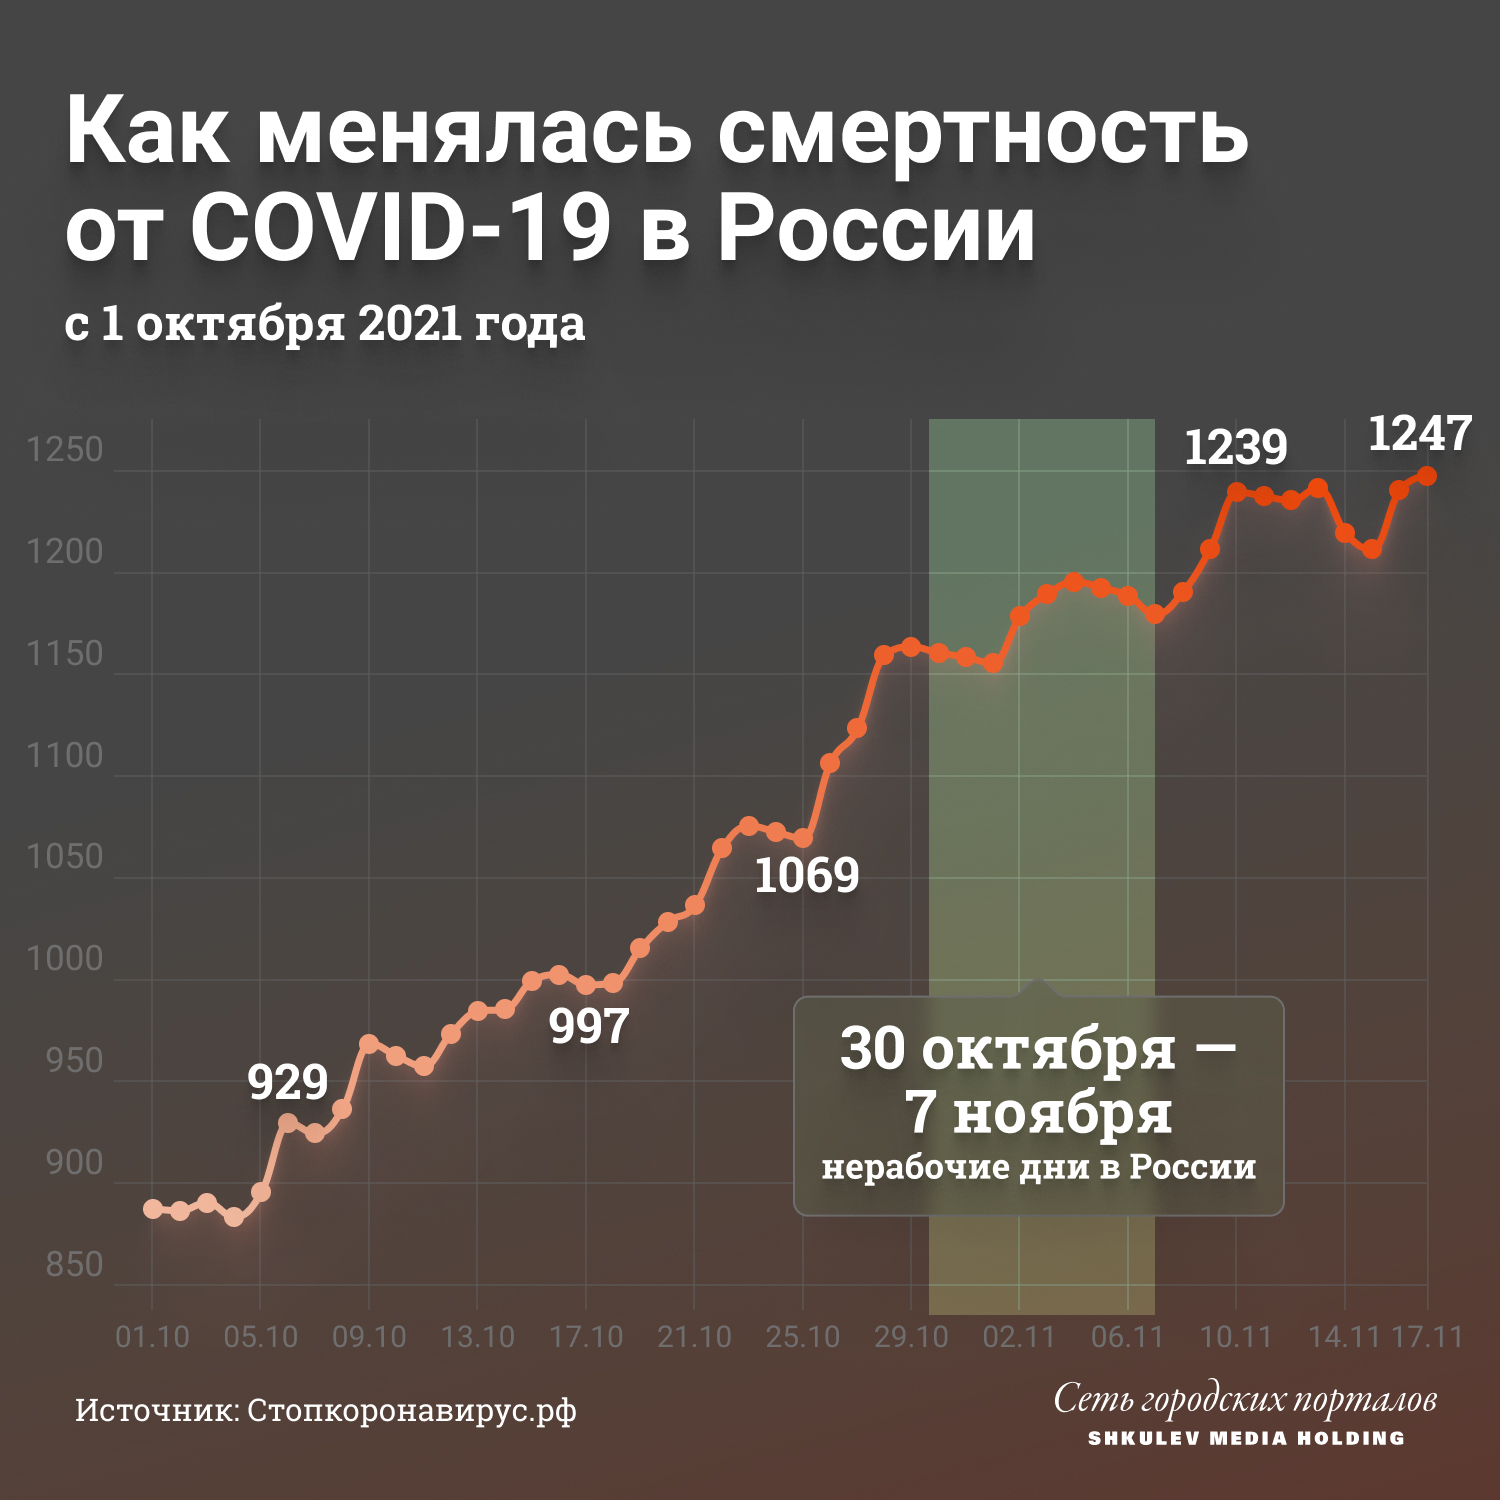 17 ноября в России зафиксировали 1247 смертей от ковида за сутки — это максимум с начала пандемии